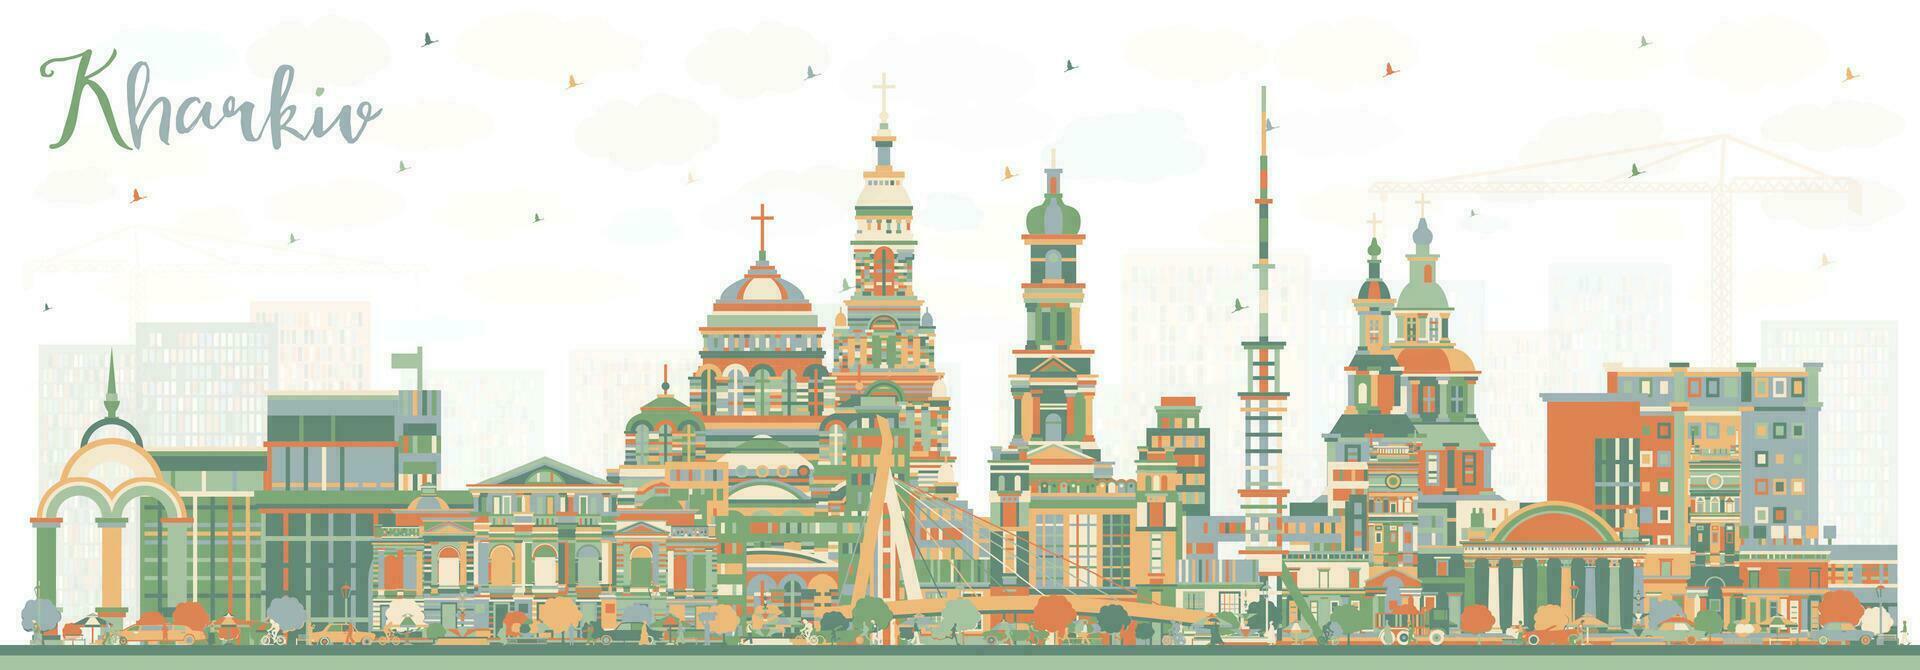 járkov Ucrania ciudad horizonte con color edificios járkov paisaje urbano con puntos de referencia negocio viaje y turismo concepto con histórico arquitectura. vector